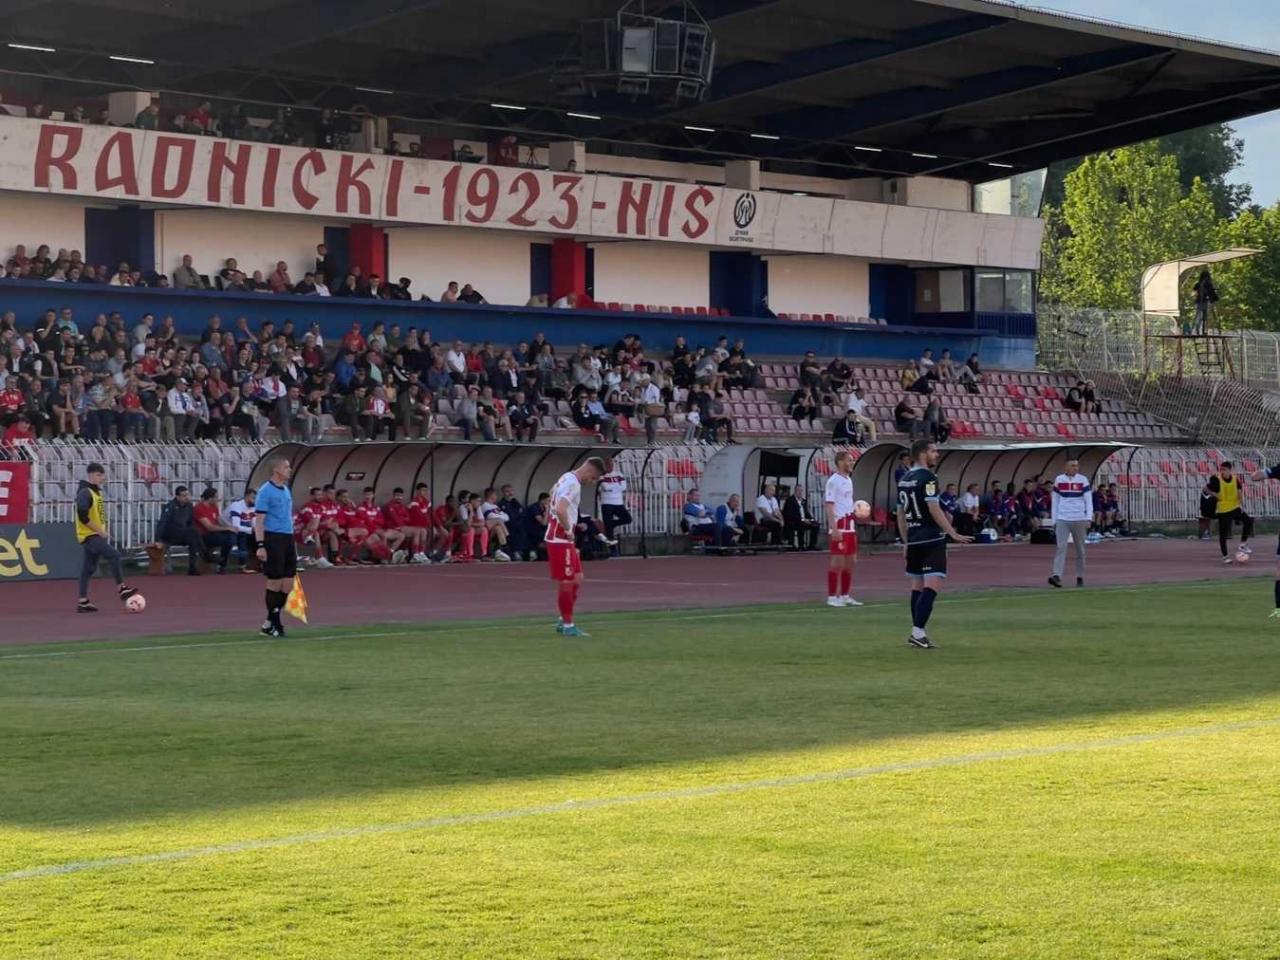 Sve vesti dana na temu : FK Radnički Niš